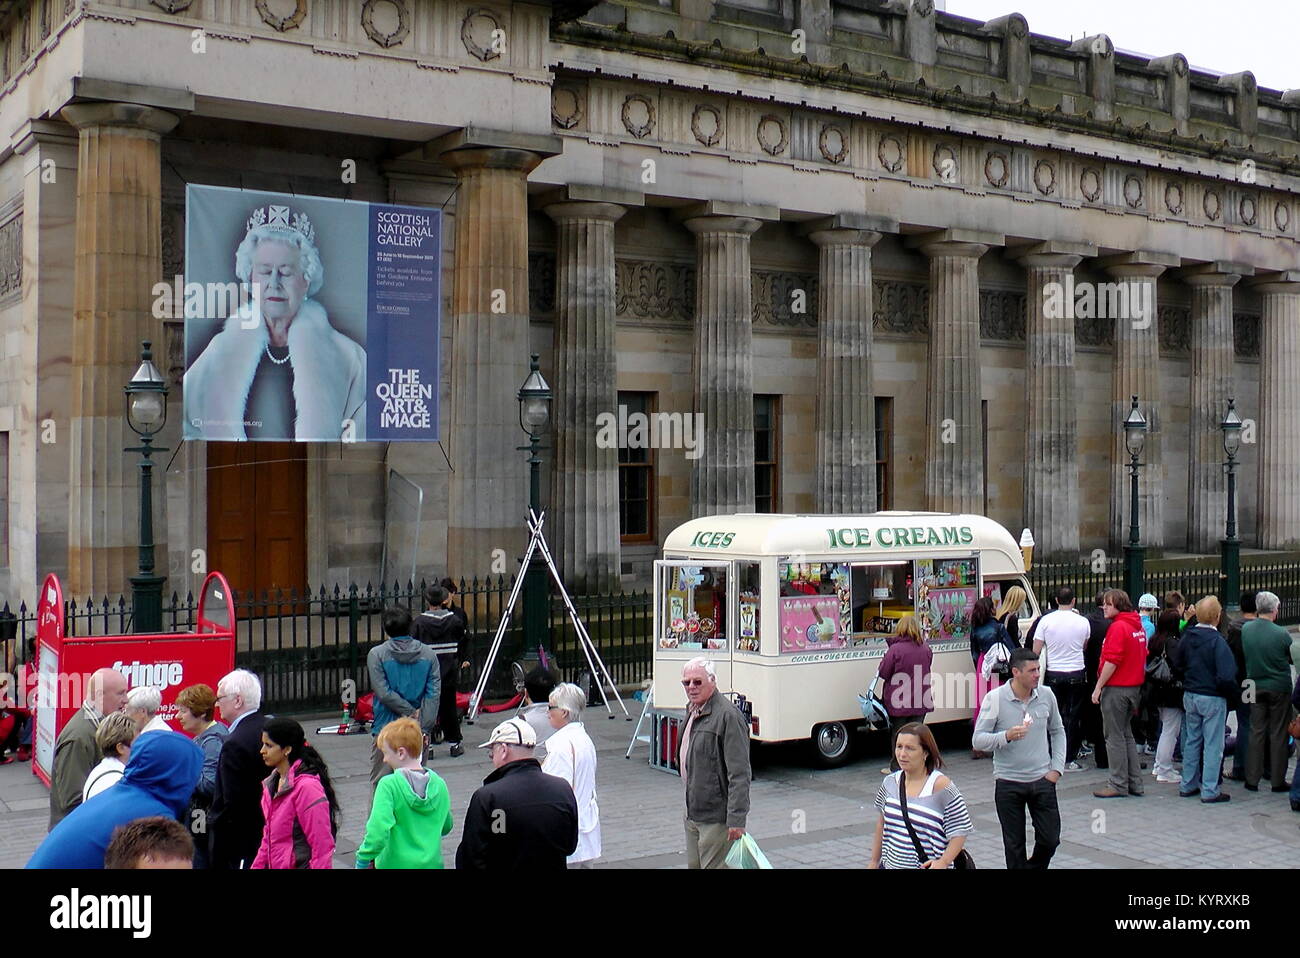 Edinburgh International Festival Fringe scena di strada la folla di turisti e animatori artisti interpreti o esecutori in Scottish National Gallery piazza delle prestazioni Foto Stock